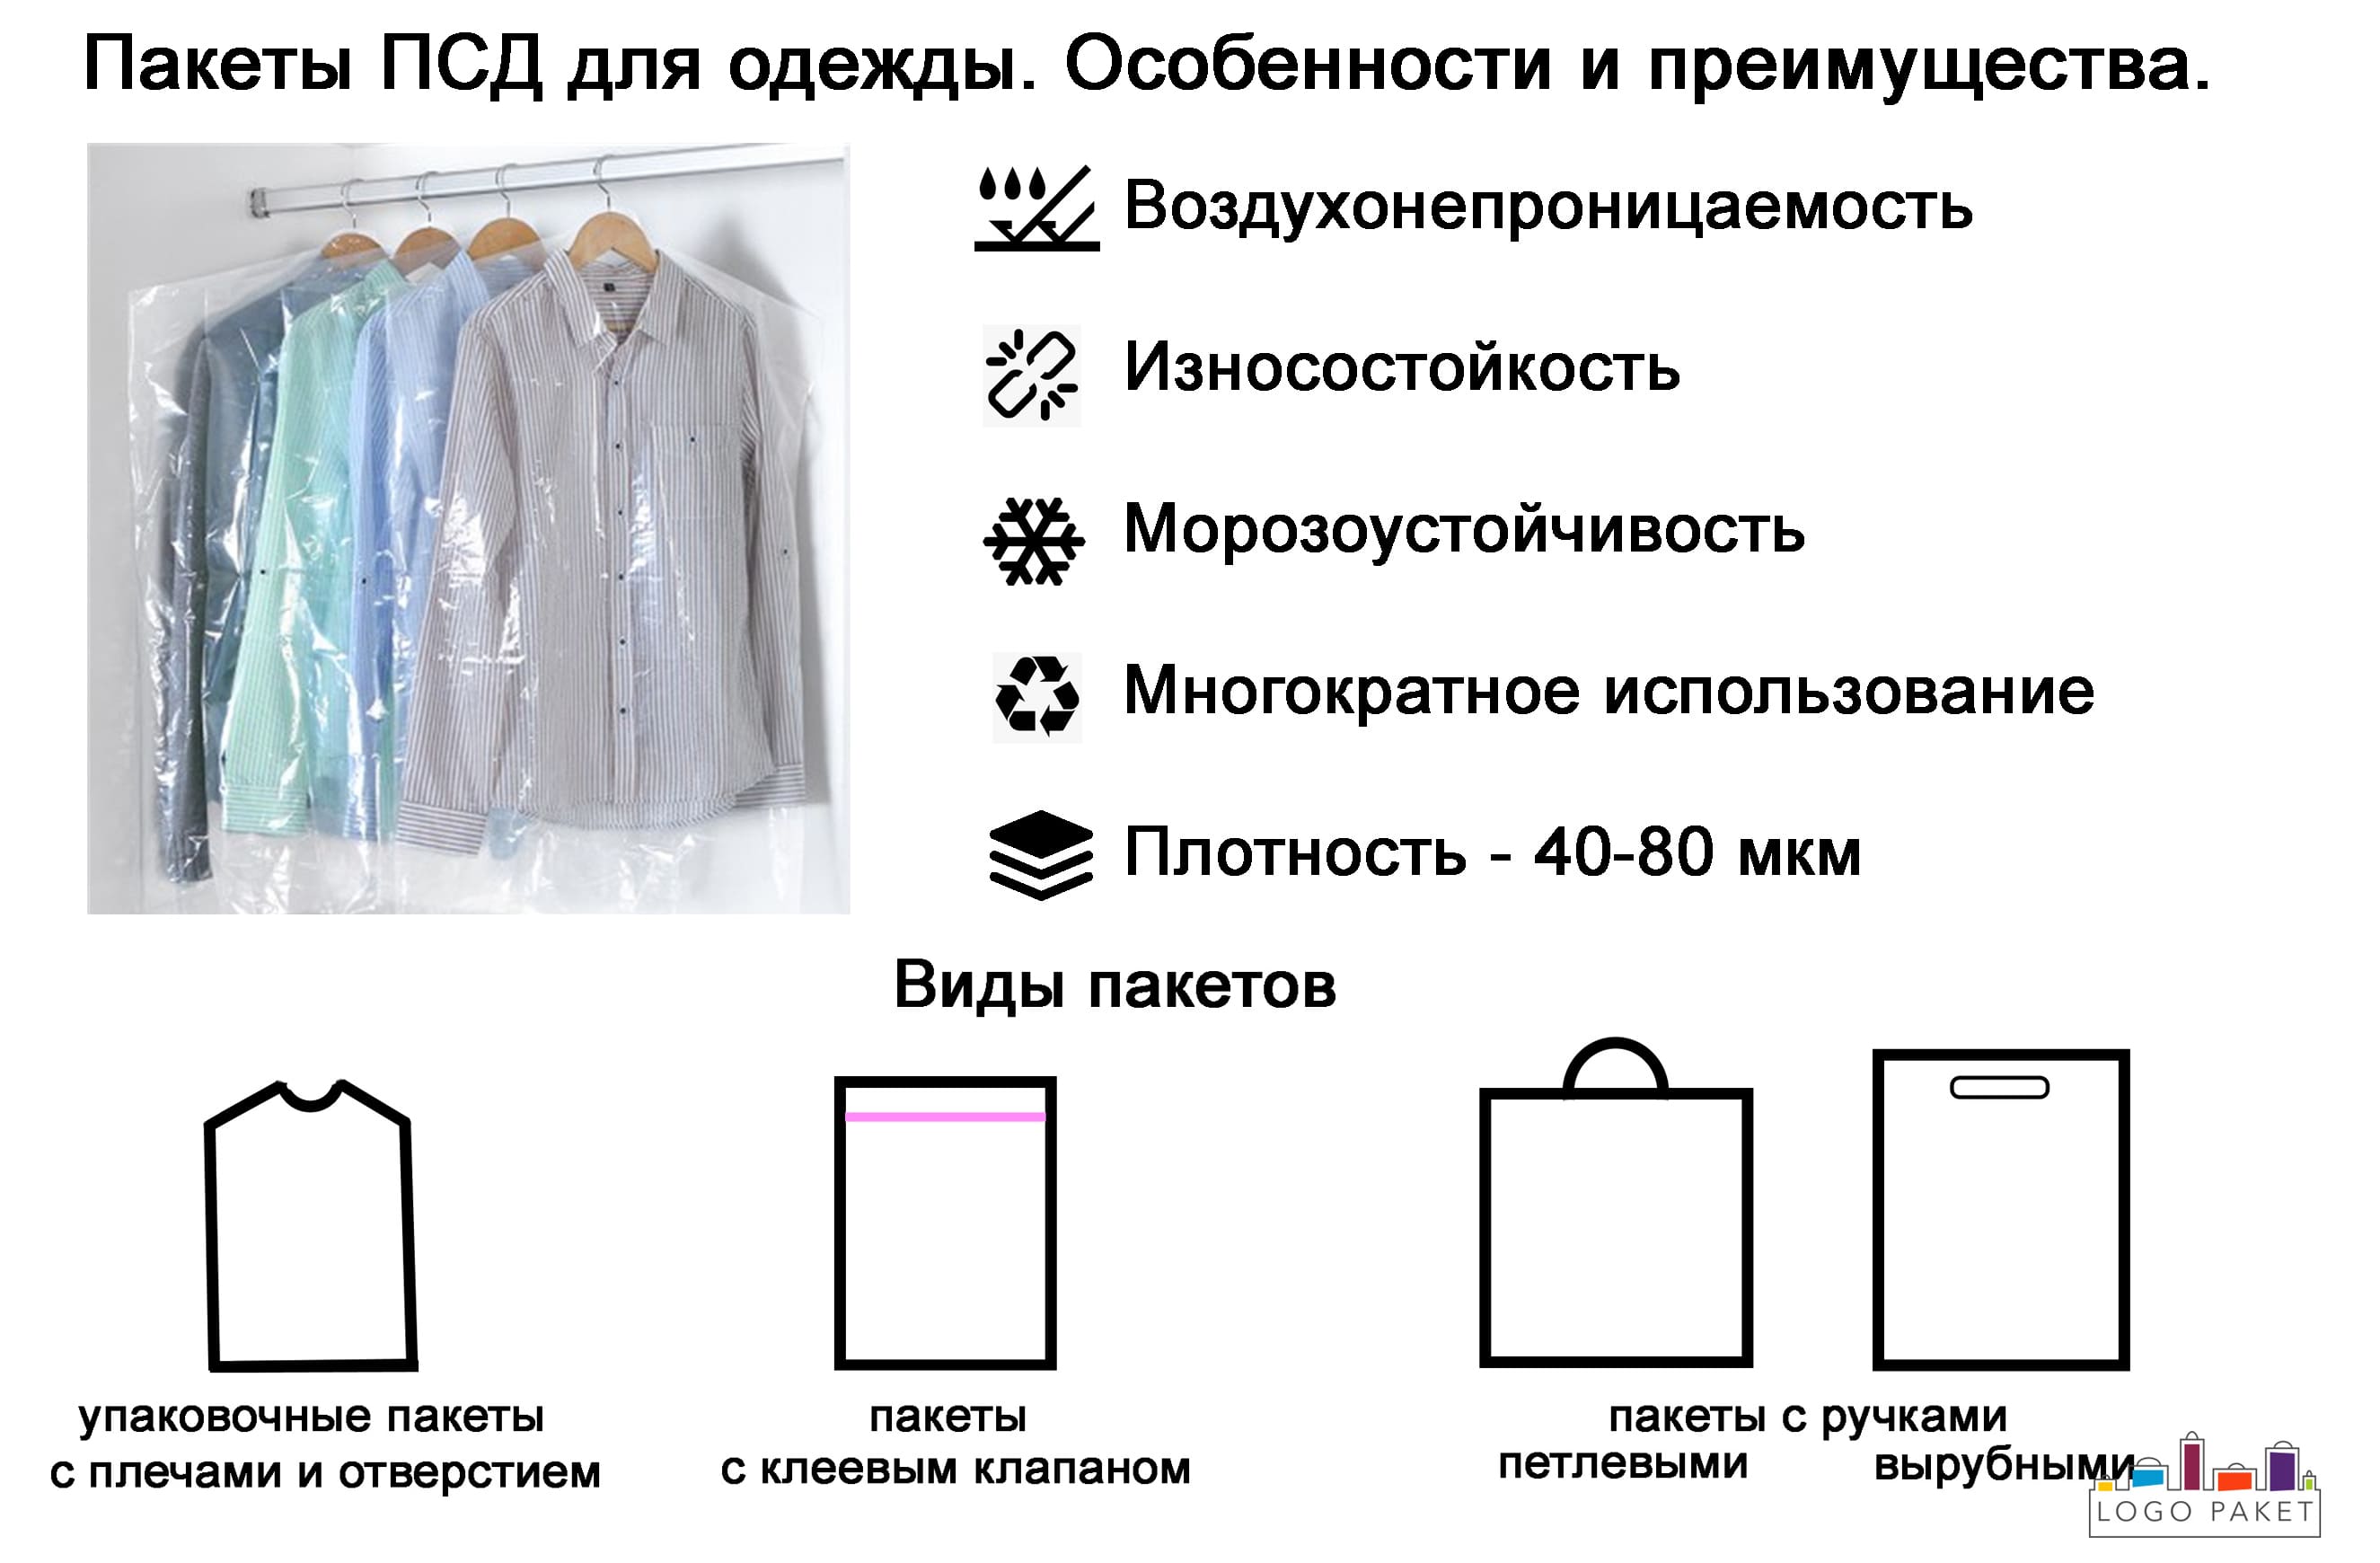 Пакеты ПСД для одежды. Инфографика.